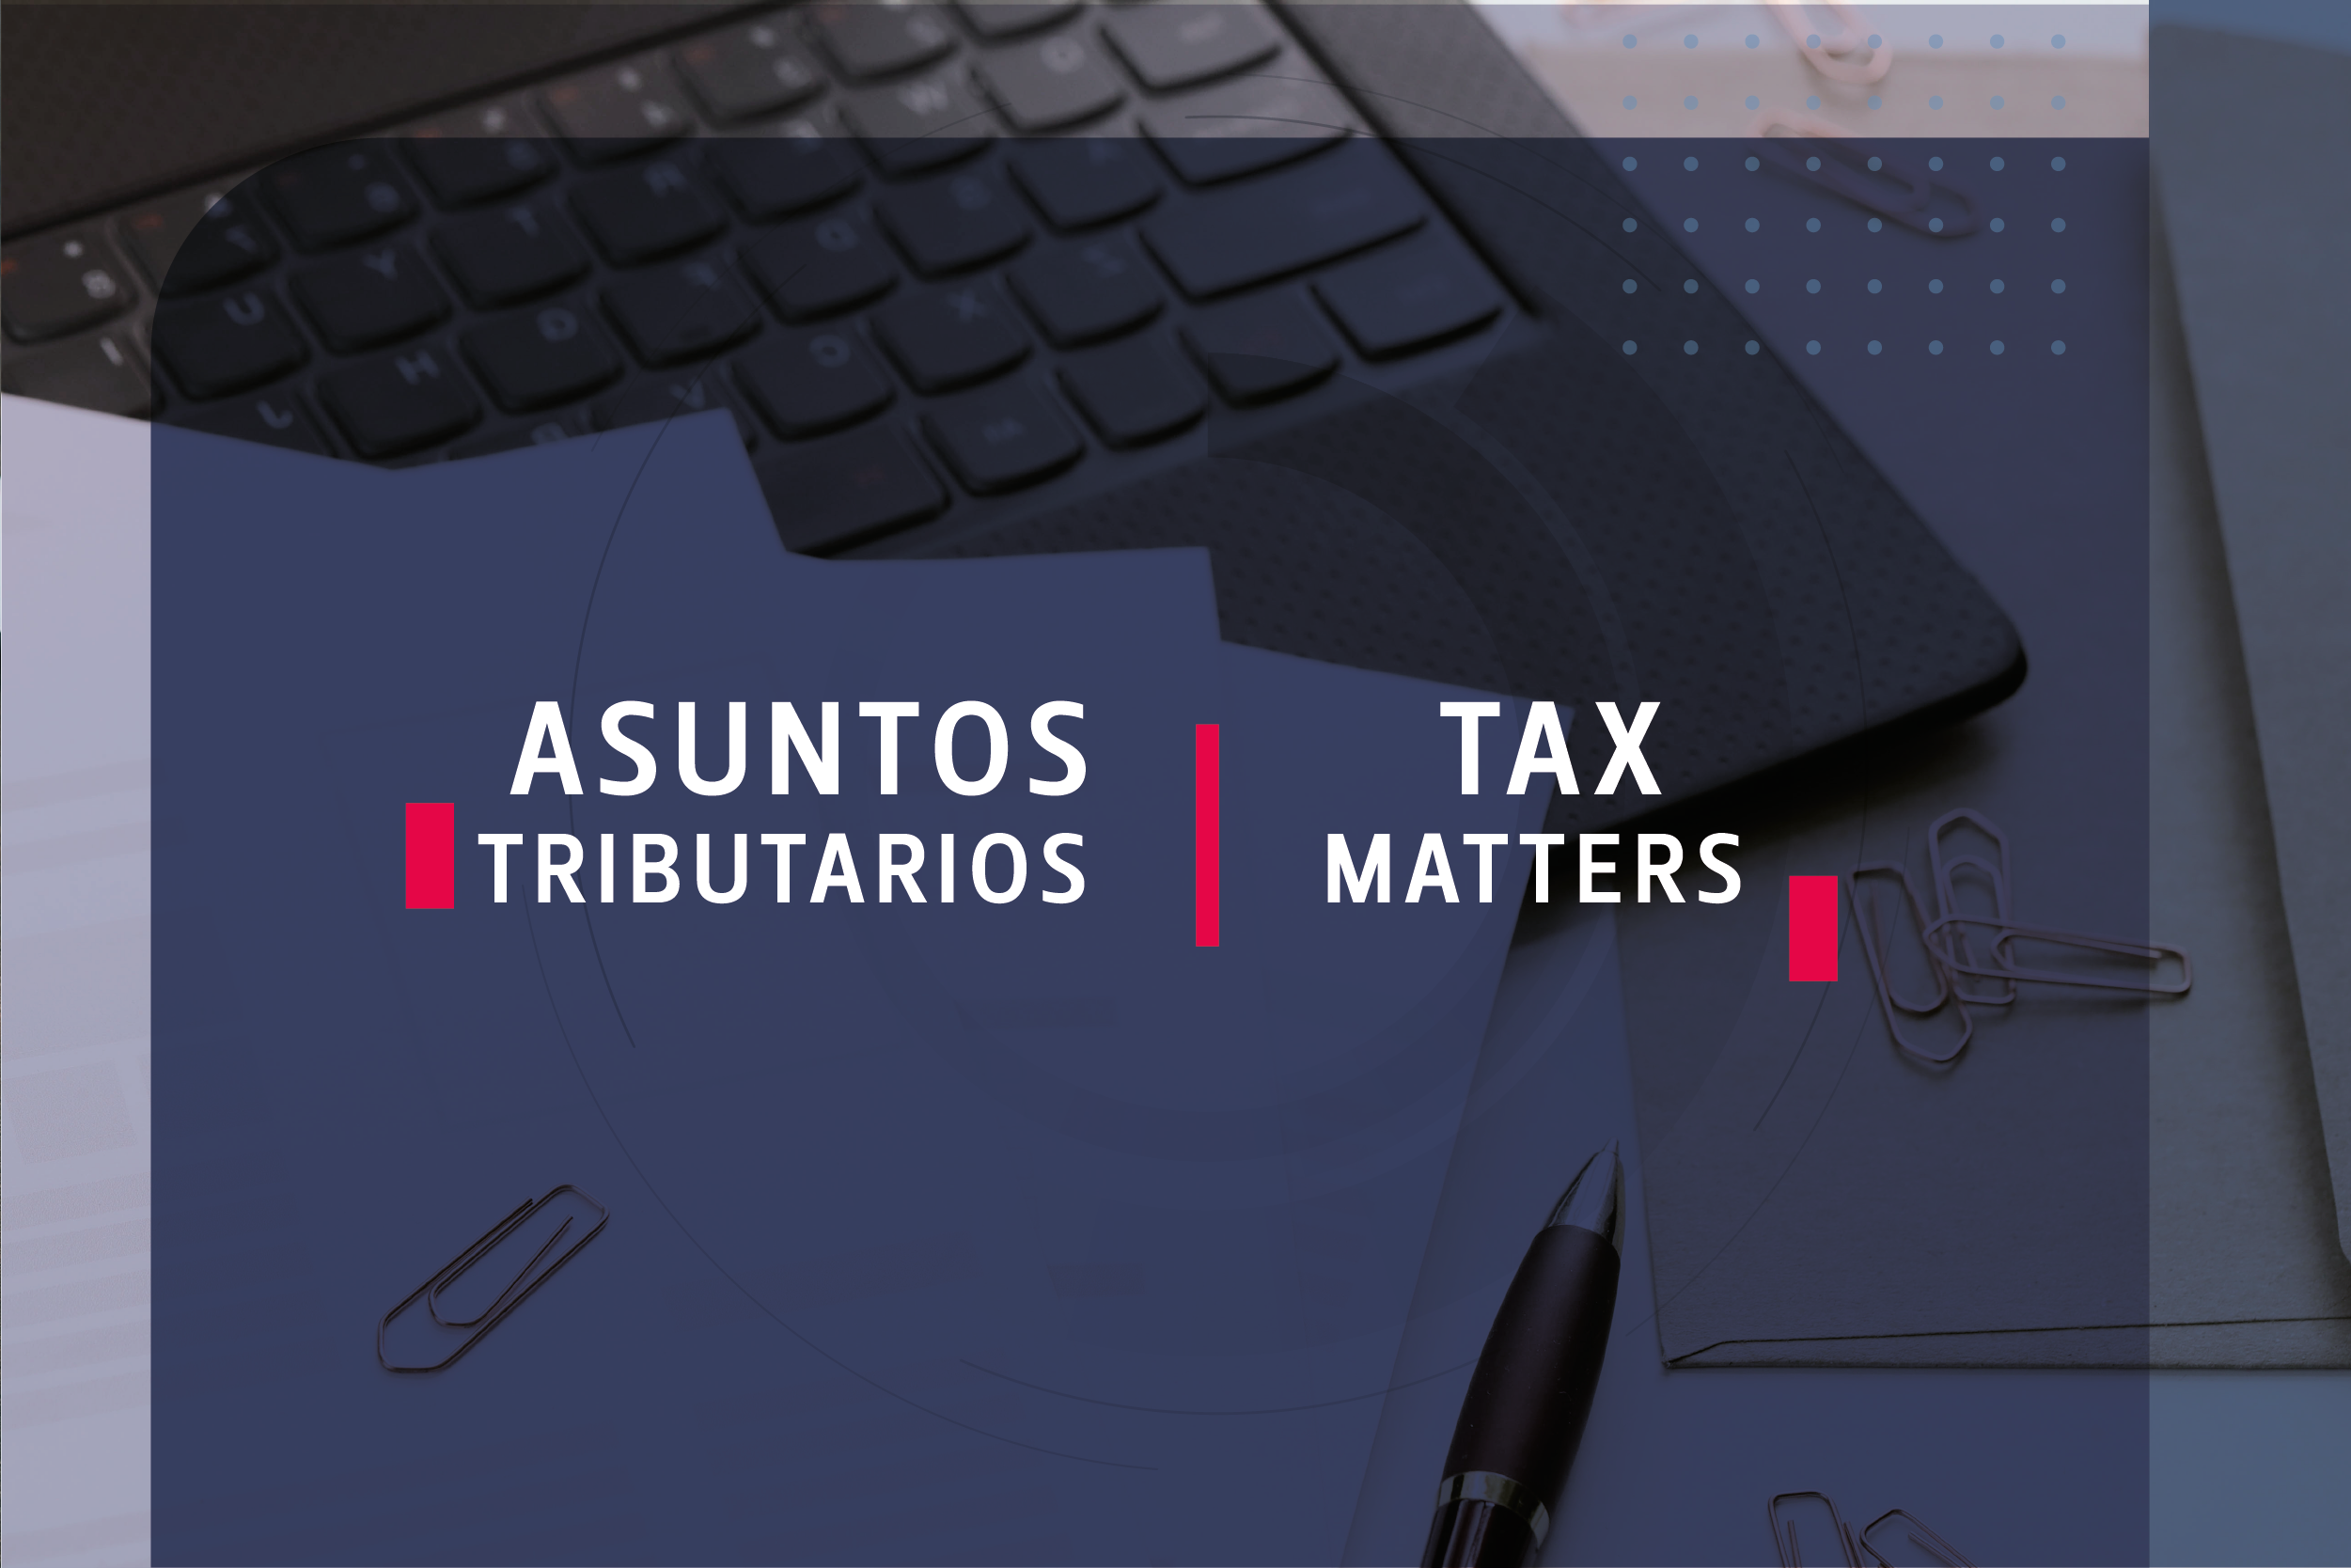 Tax matters